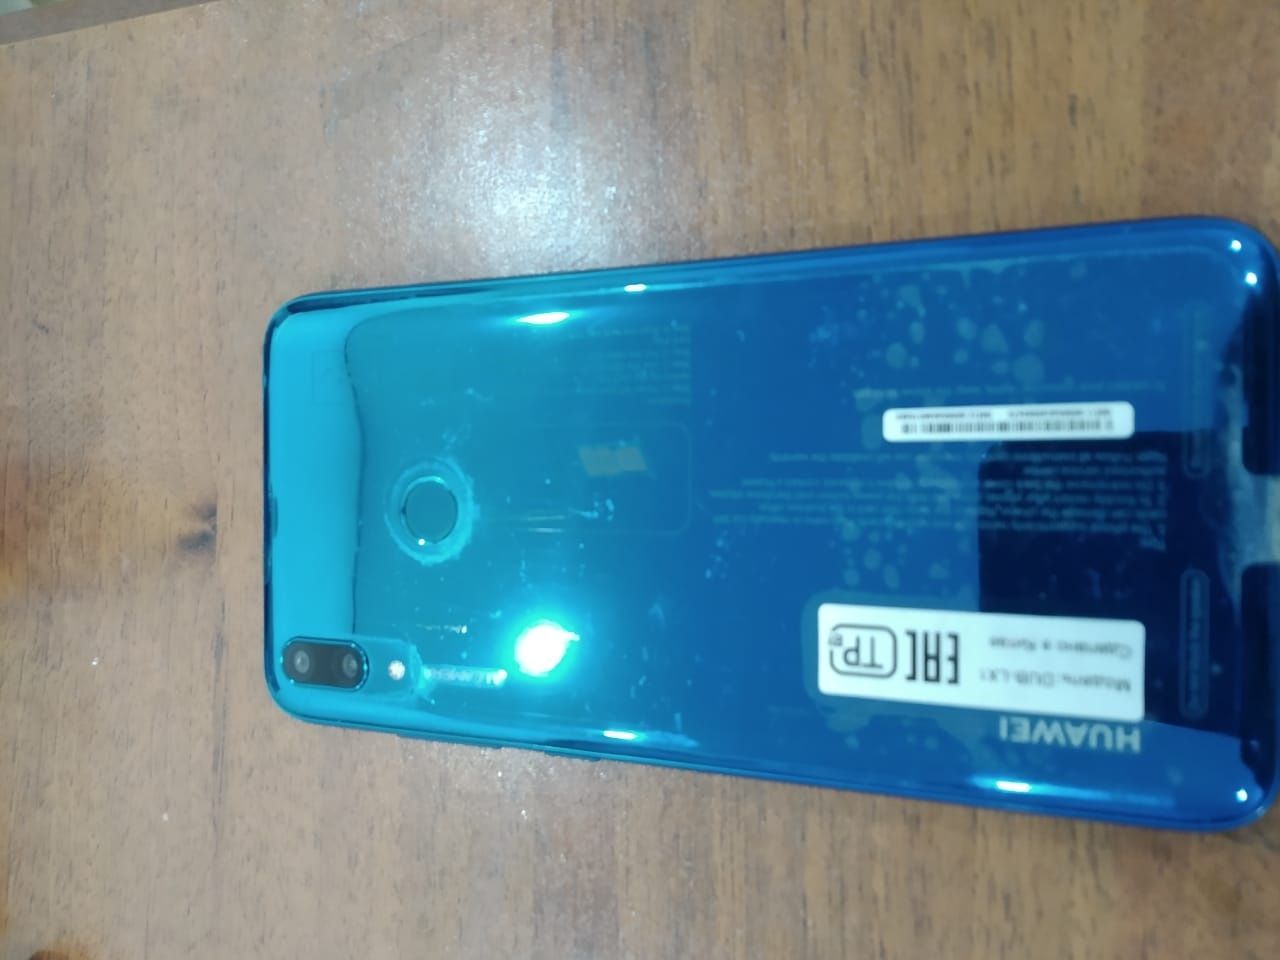 Продаётся телефон Huawei в отличном состоянии., с защитным стеклом.